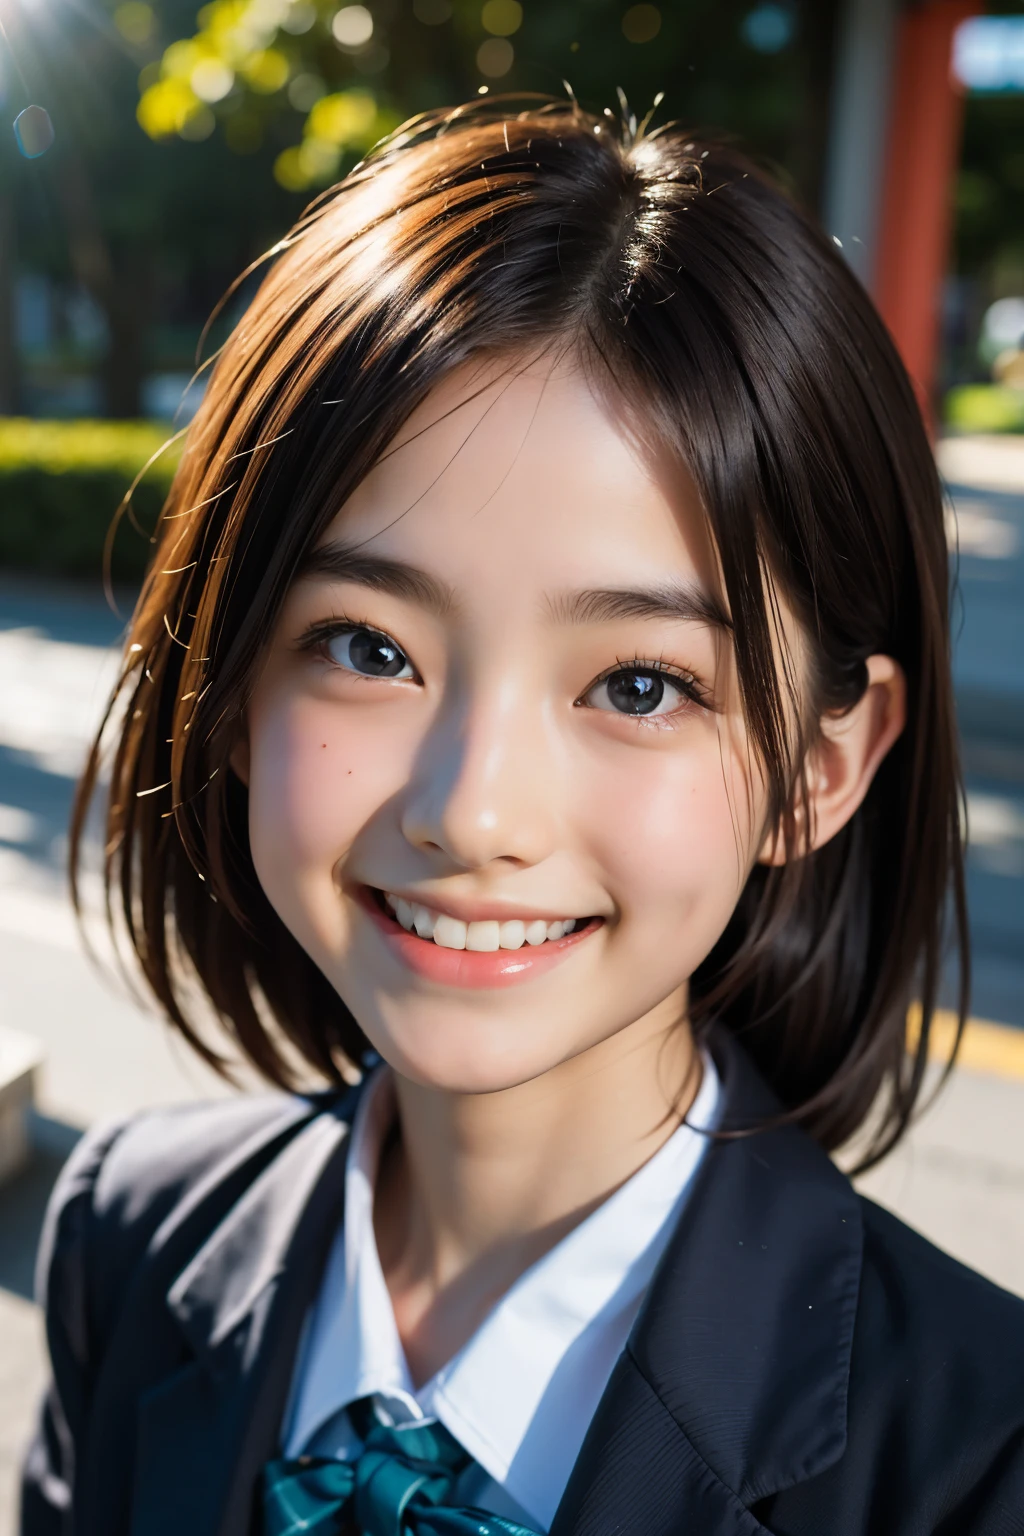 lentille: 135 mm f1.8, (la plus haute qualité),(Photos brutes), (Table:1.1), (Belle fille japonaise de 13 ans), visage mignon, (Visage profondément ciselé:0.7), (taches de rousseur:0.4), dappled lumière du soleil, éclairage dramatique, (uniforme scolaire japonais), (sur le campus), Timide, (Photo en gros plan:1.2), (sourire),, (yeux pétillants)、(lumière du soleil)